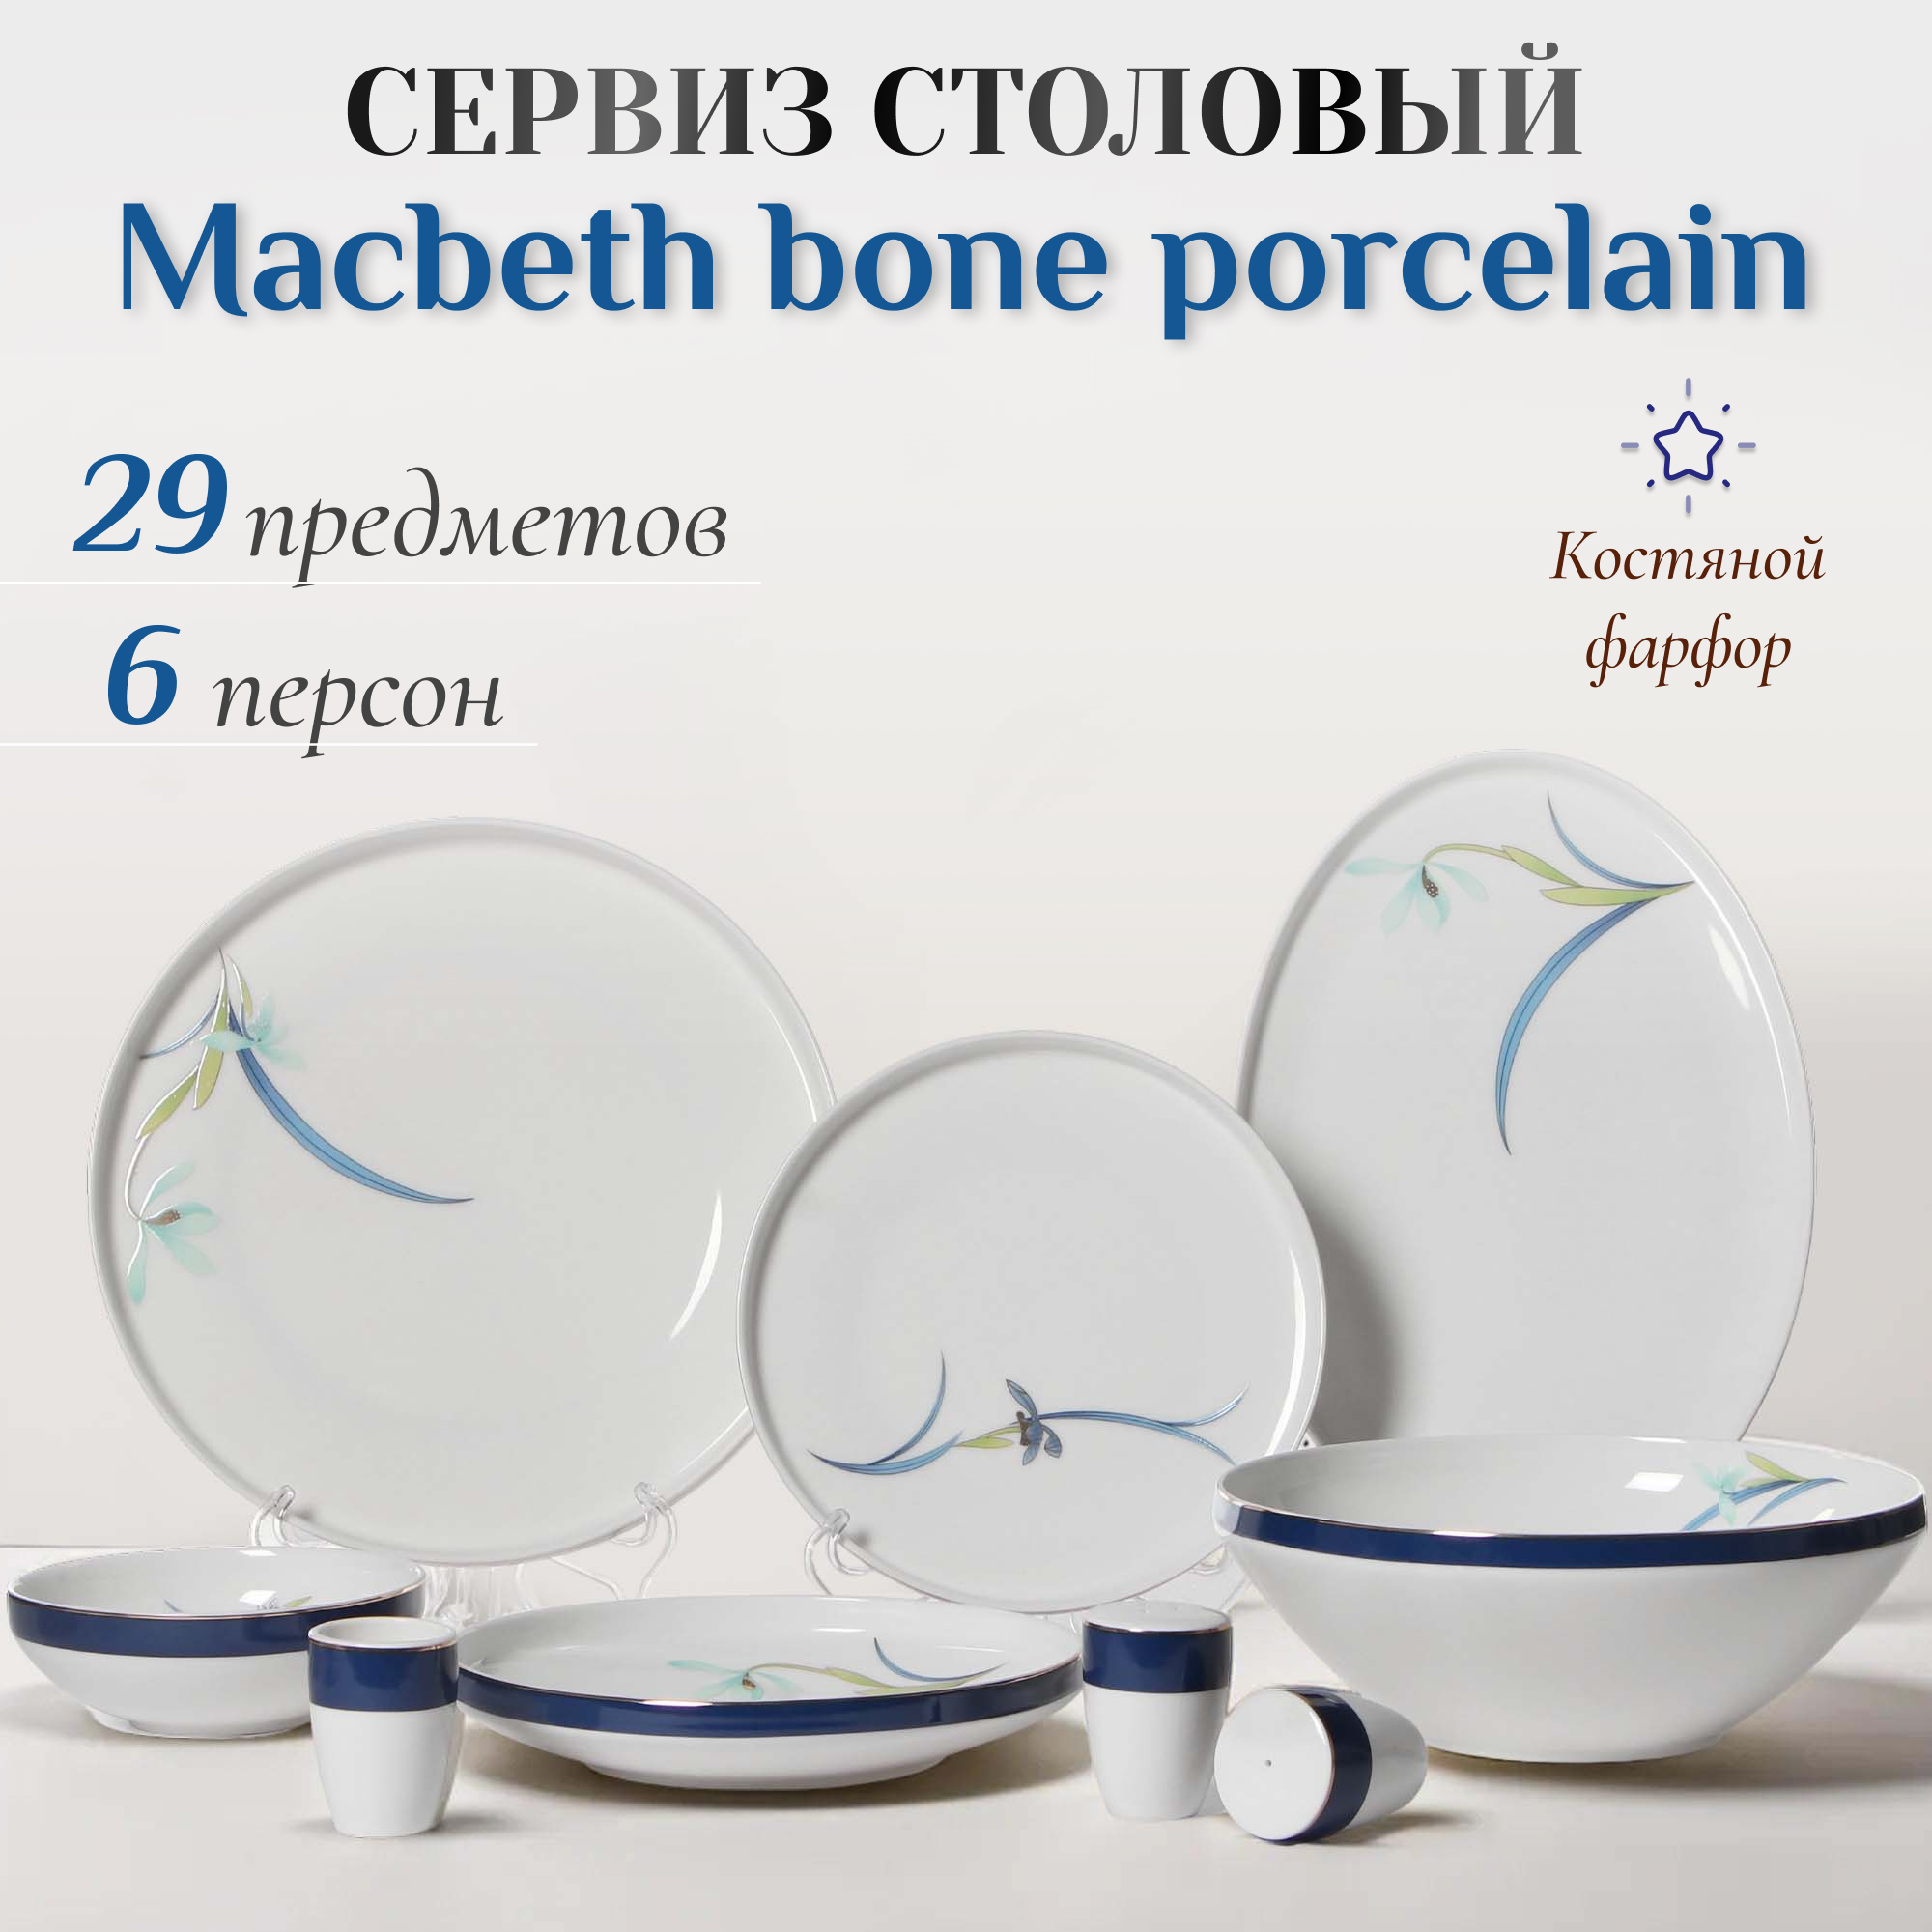 Сервиз столовый Macbeth bone porcelain Finest 29 предметов 6 персон, цвет белый - фото 2